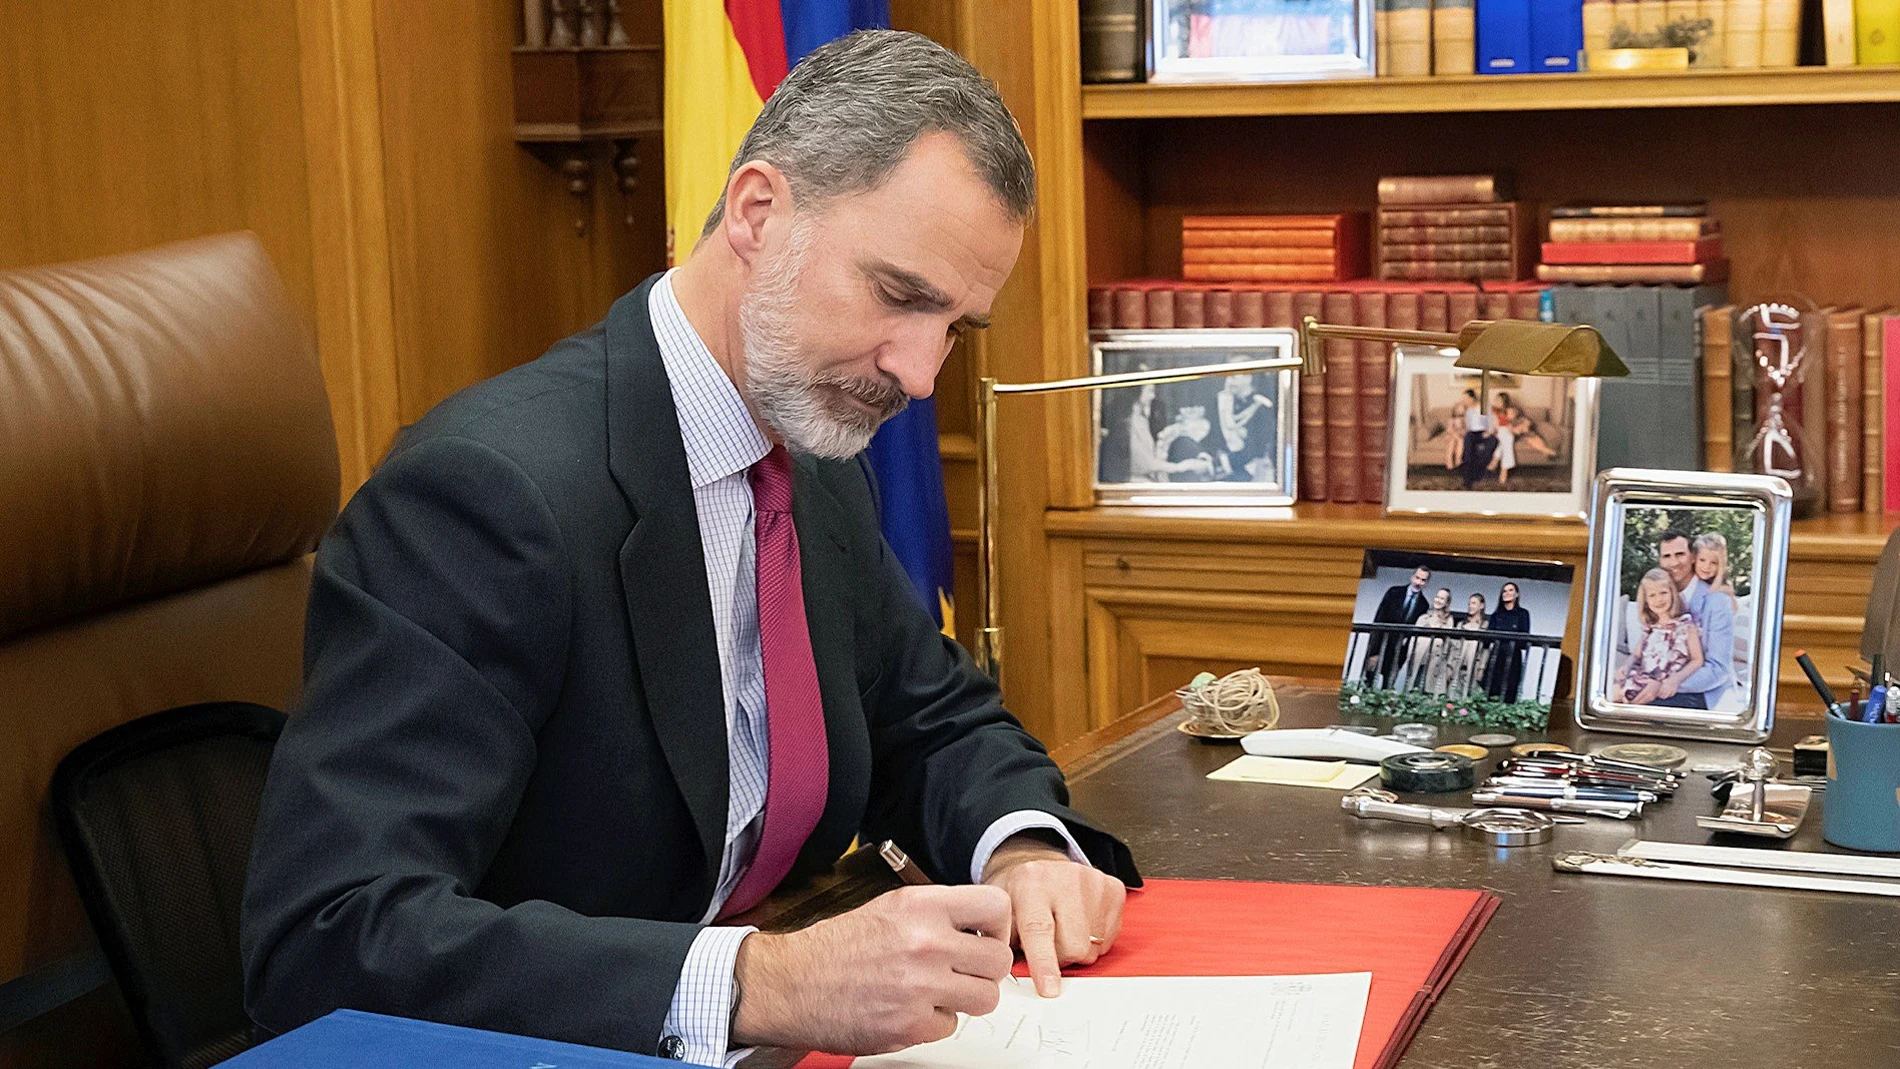 El rey firma el nombramiento de Sánchez tras comunicarle Batet su investidura